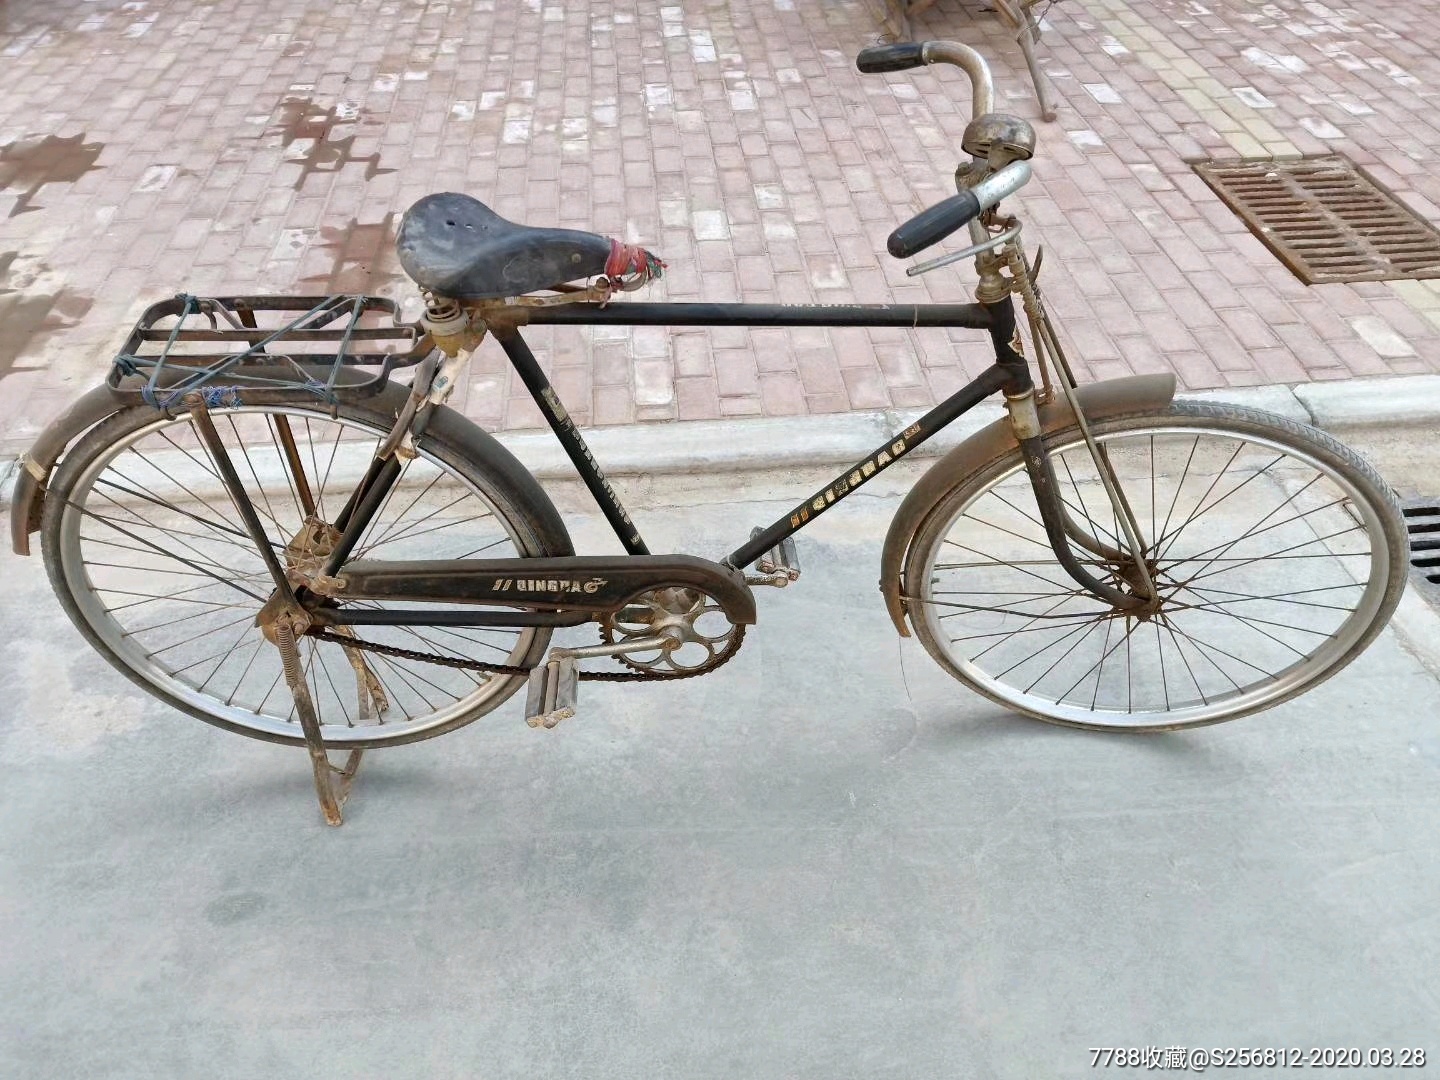 中国青岛“金鹿”自行车。全套正品老金鹿大轴，反映了青岛品牌旧时光记忆，正常使用_其他车马/户外_作品图片_收藏价格_7788纸艺